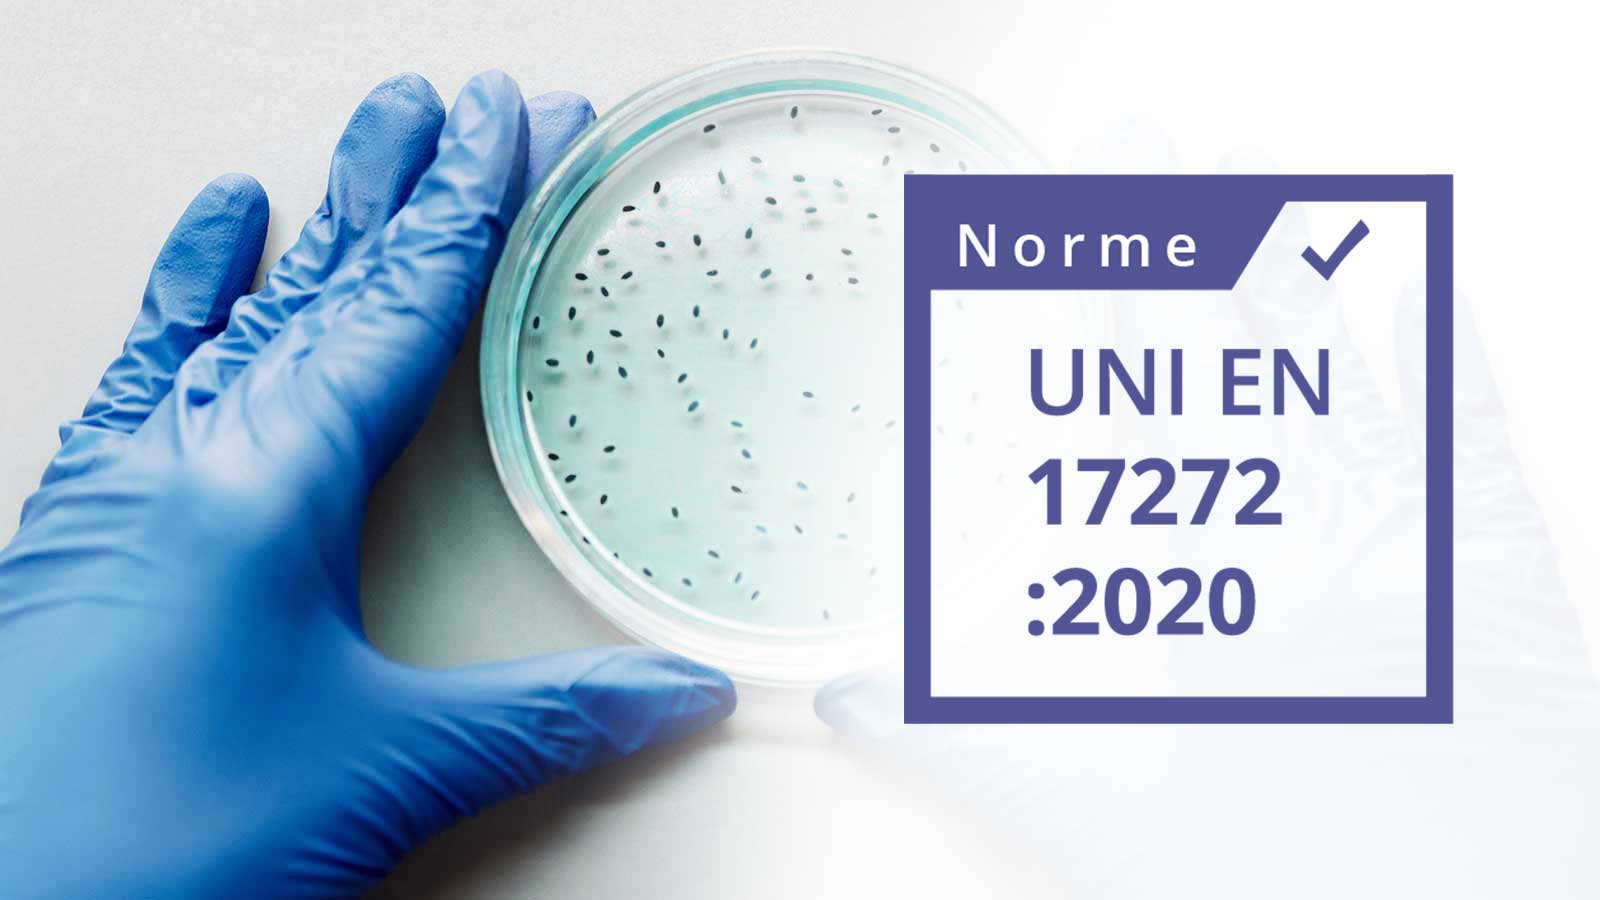 Logo norme UNI NF EN 17272 écrit dans un carrer blanc avec un contour violet. le fond de l'image est une photo d'une boite de pétrie avec des bactéries tenu par une main dans un gant en latex 